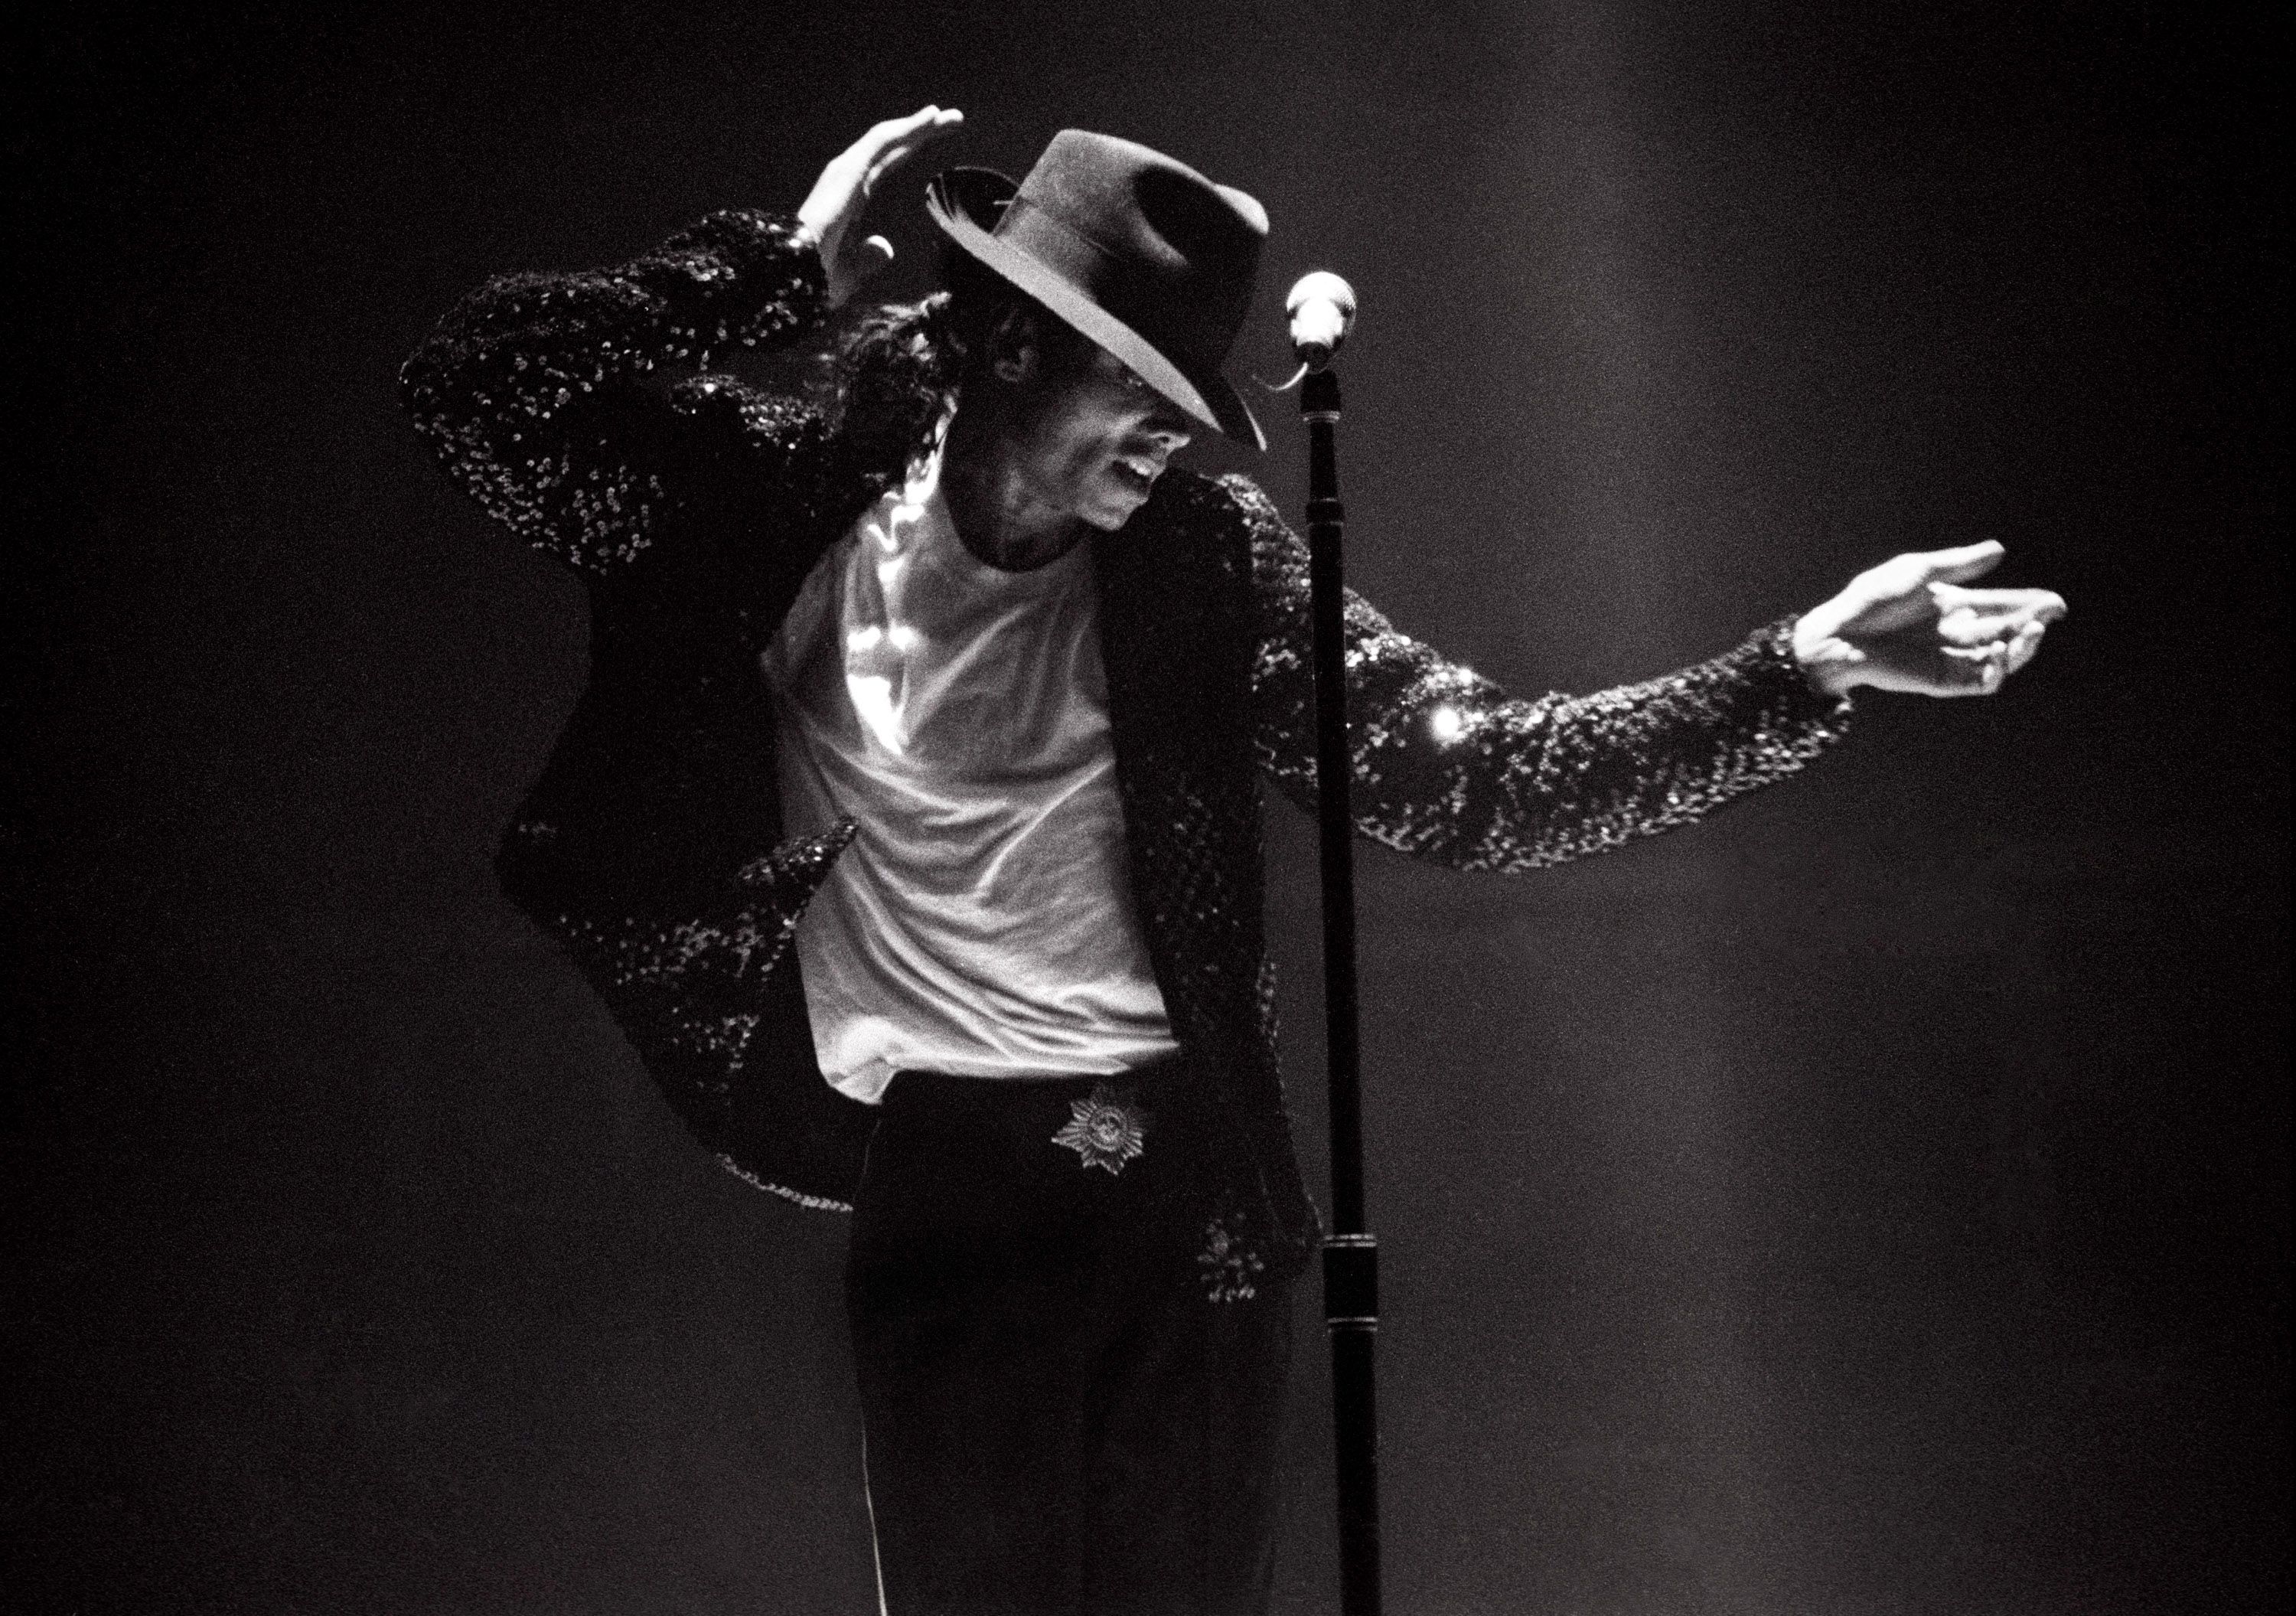 MMD Michael Jackson Billie Jean 04 Update FHD by Haganeya on DeviantArt